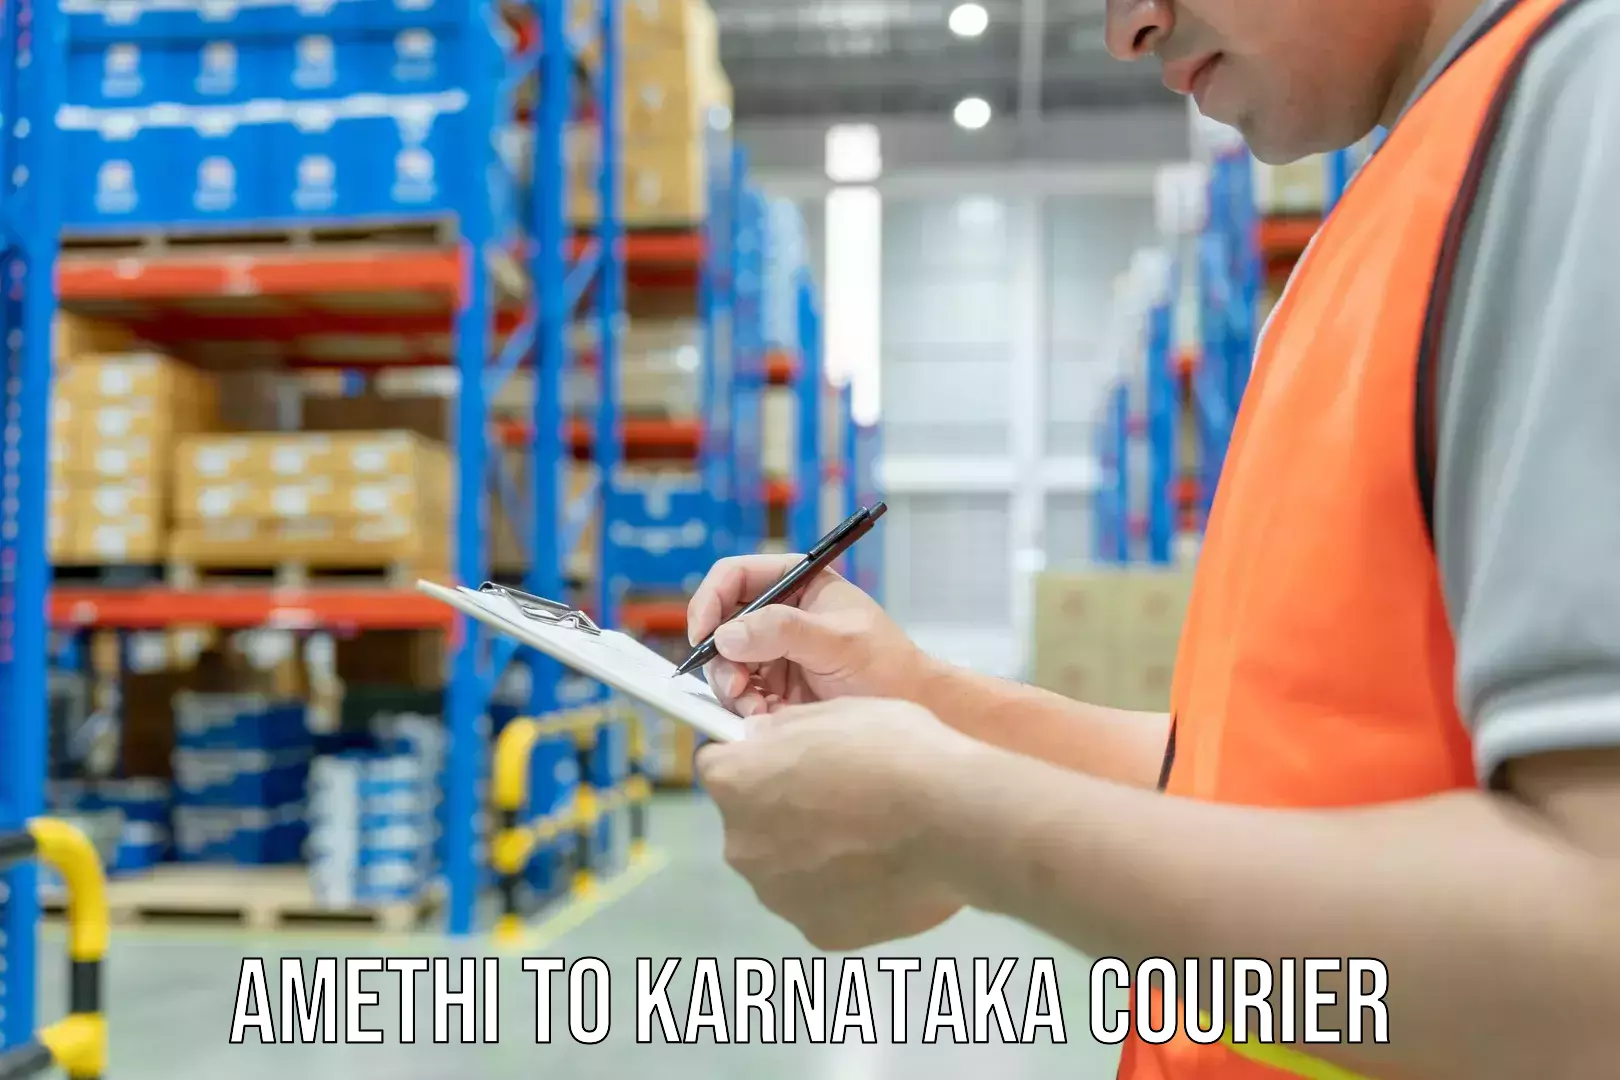 Professional courier handling Amethi to Karnataka